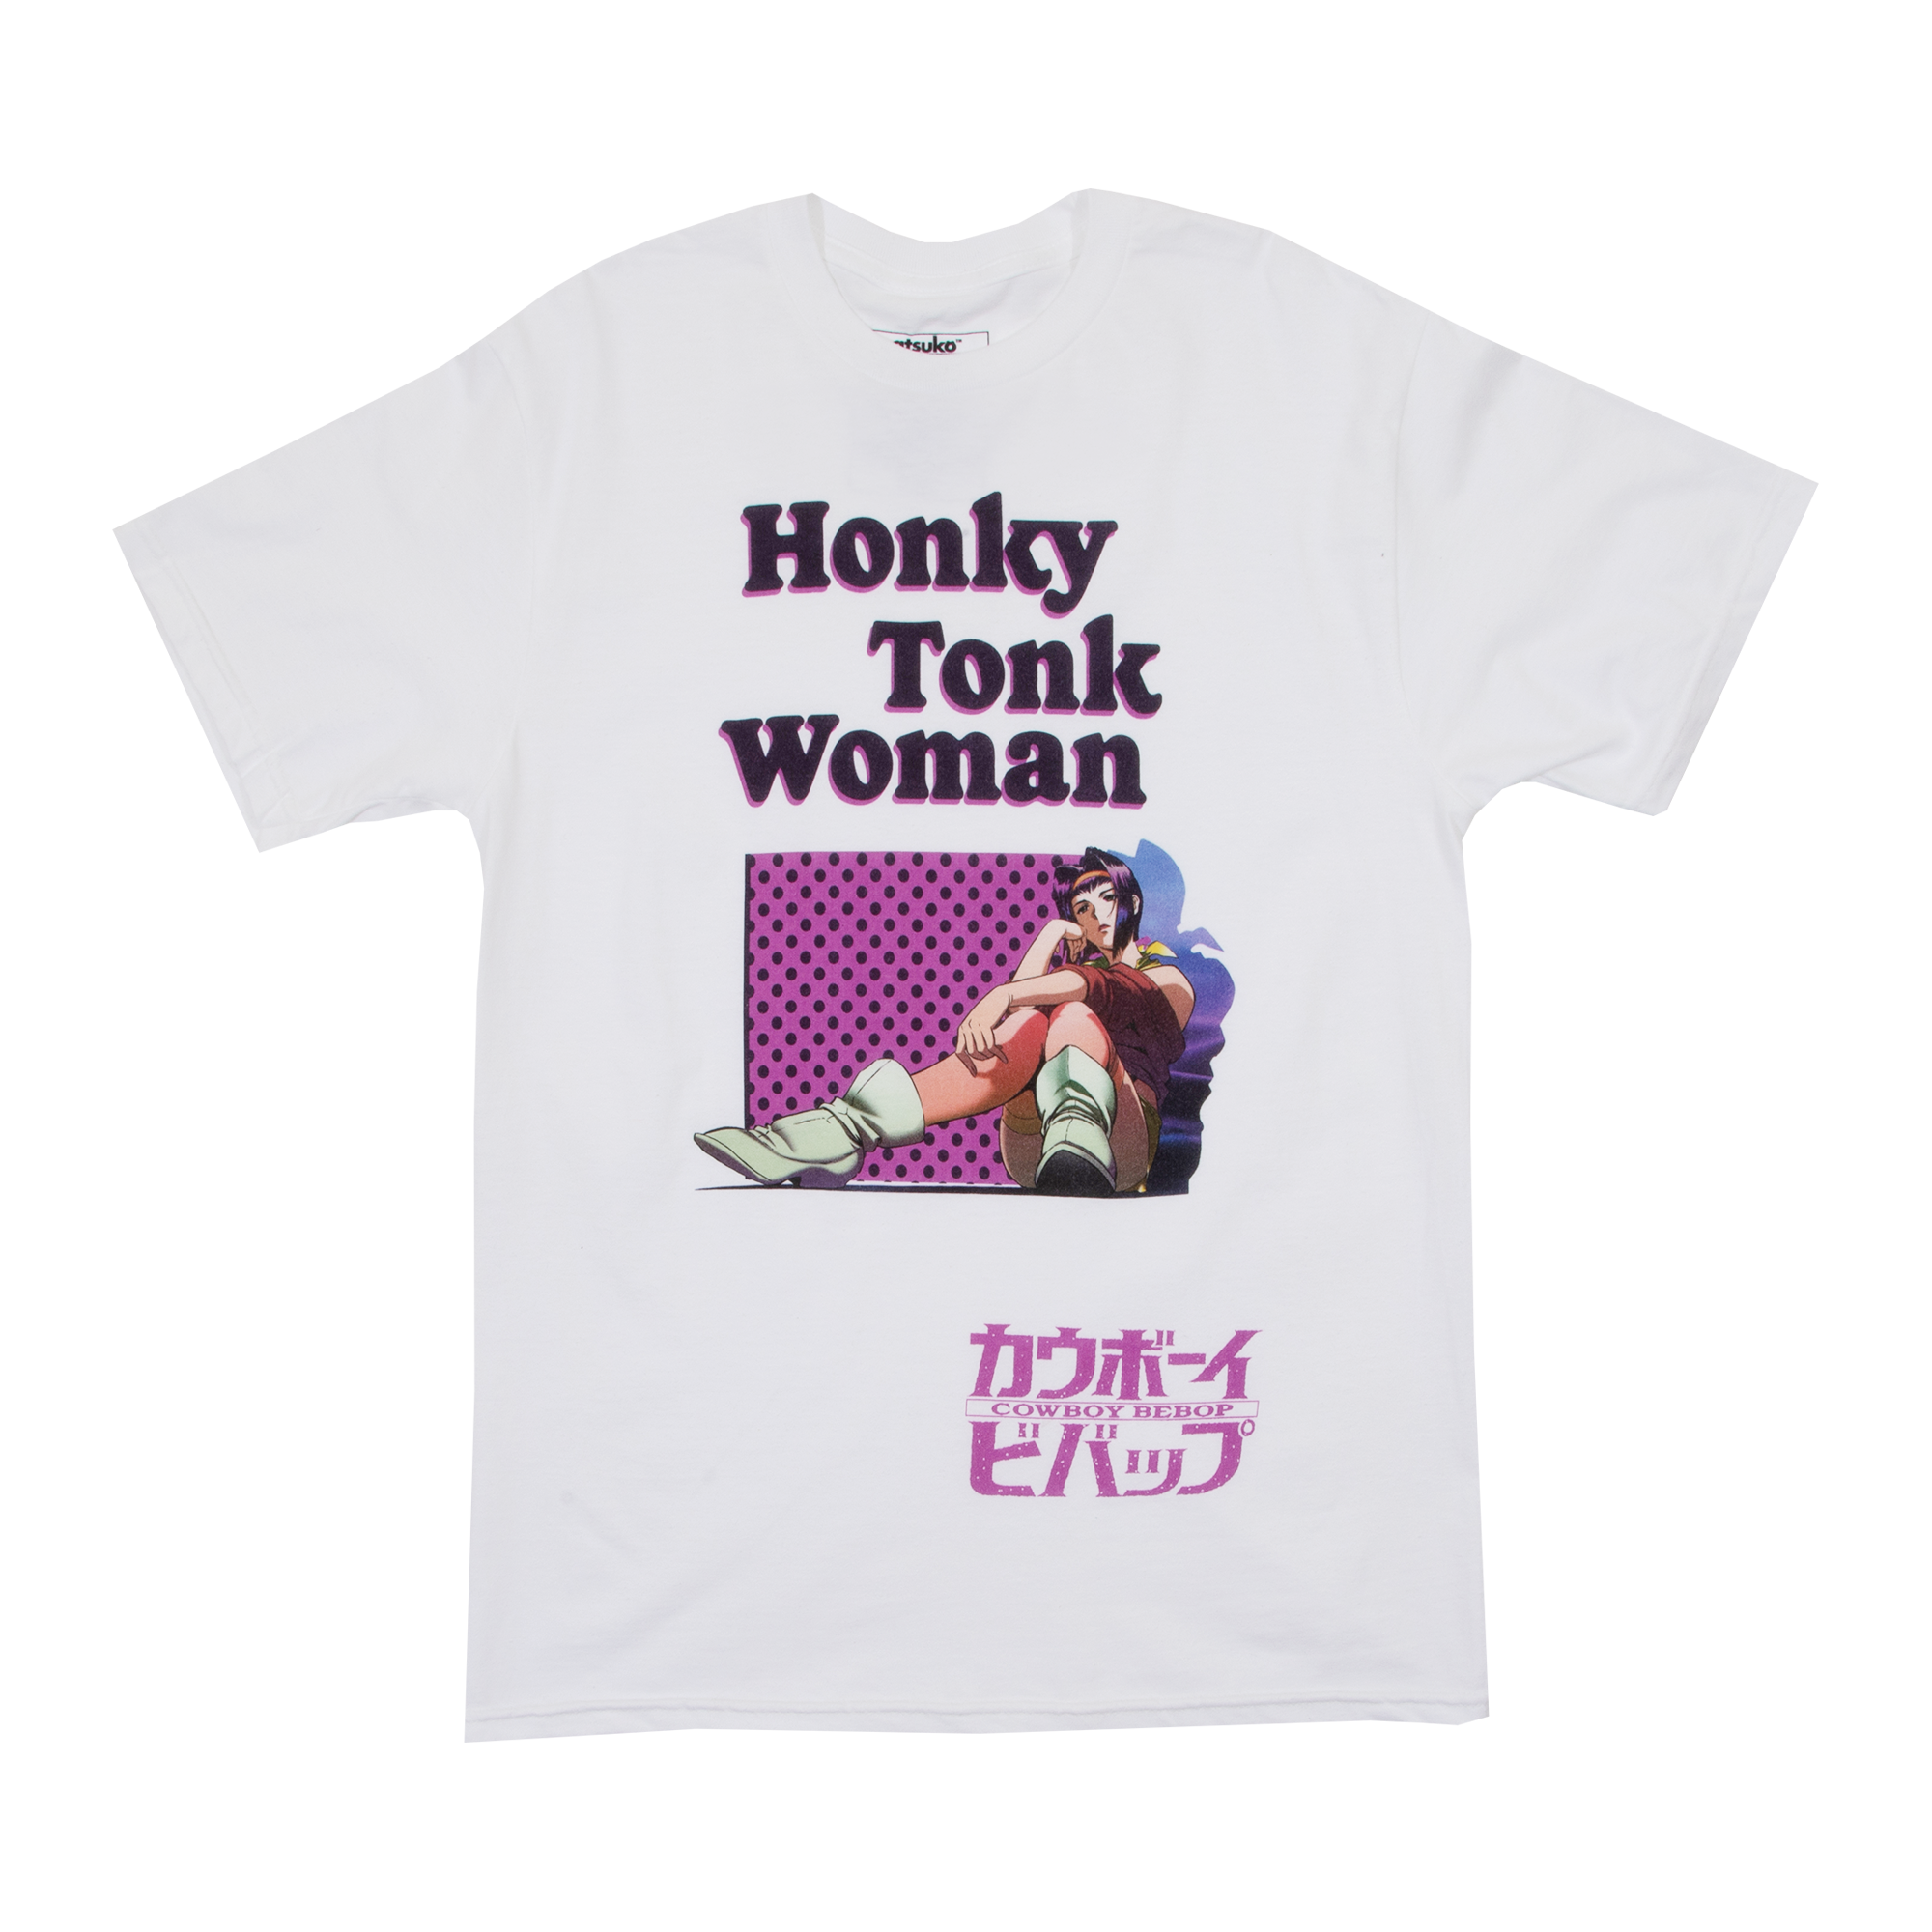 Honky Tonk Woman White Tee